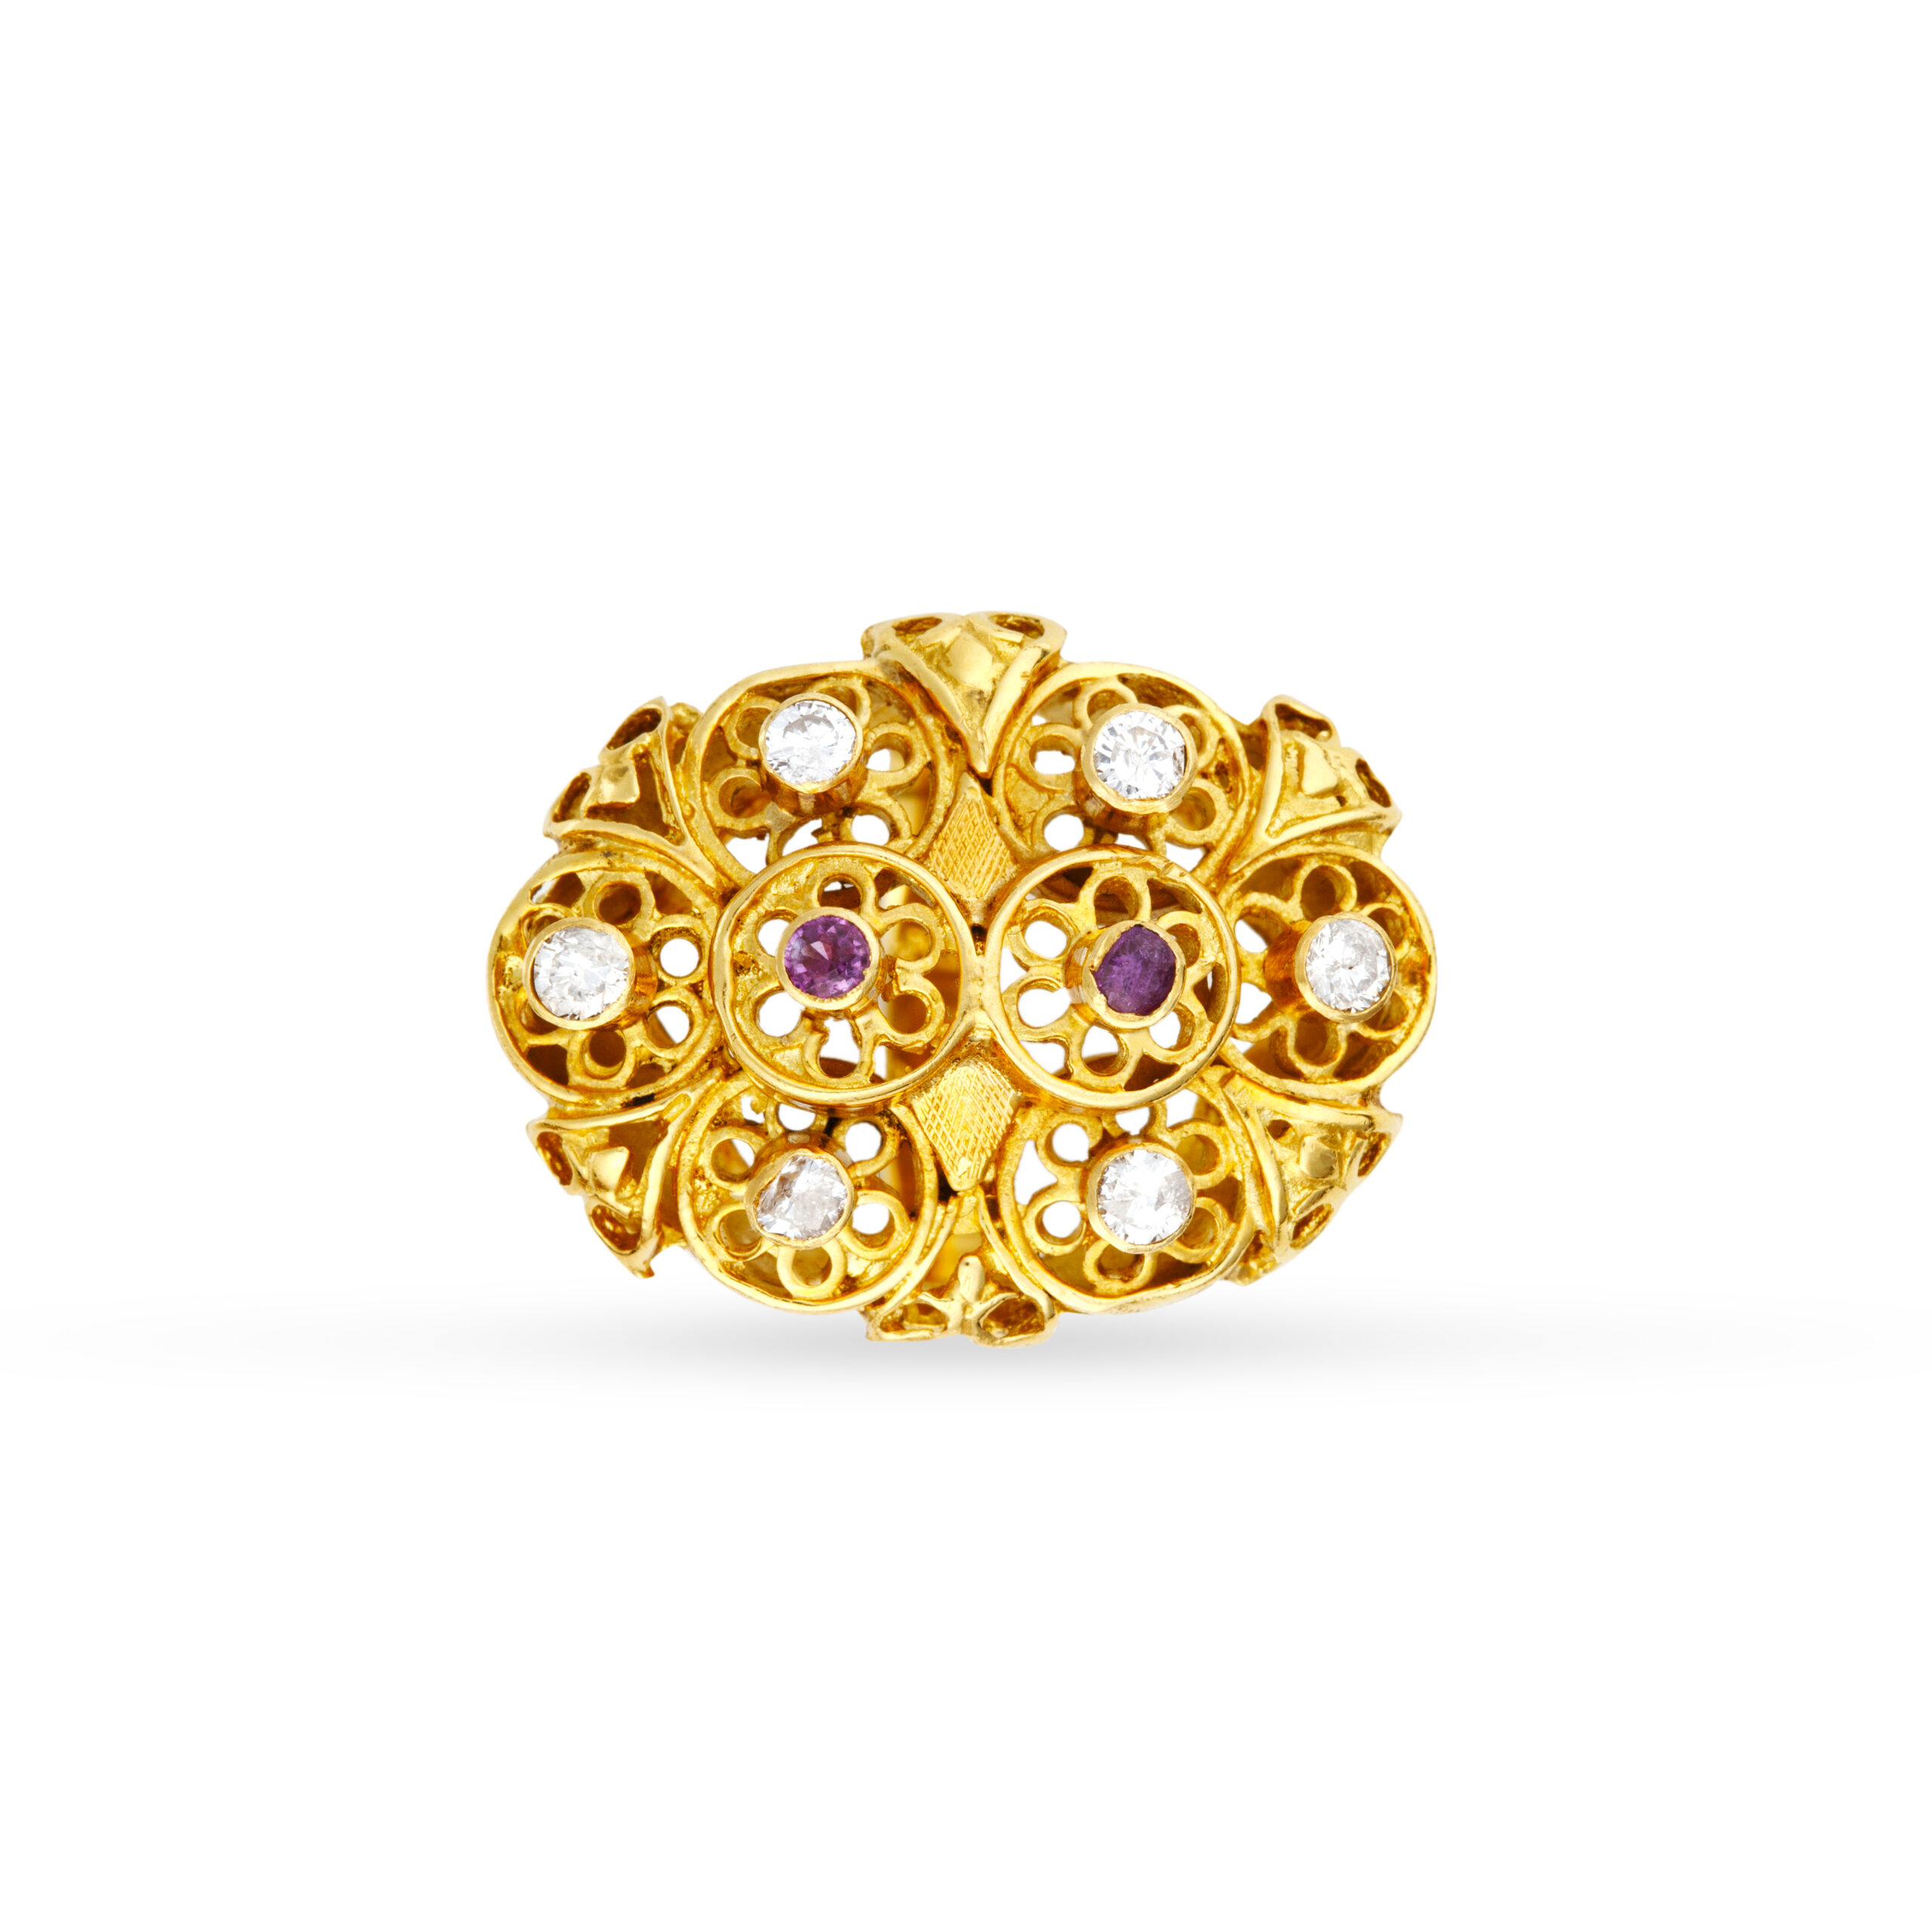 One-of-a-kind εντυπωσιακό χειροποίητο δαχτυλίδι σε κίτρινο χρυσό Κ18 με λουστρέ και florentine φινίρισμα